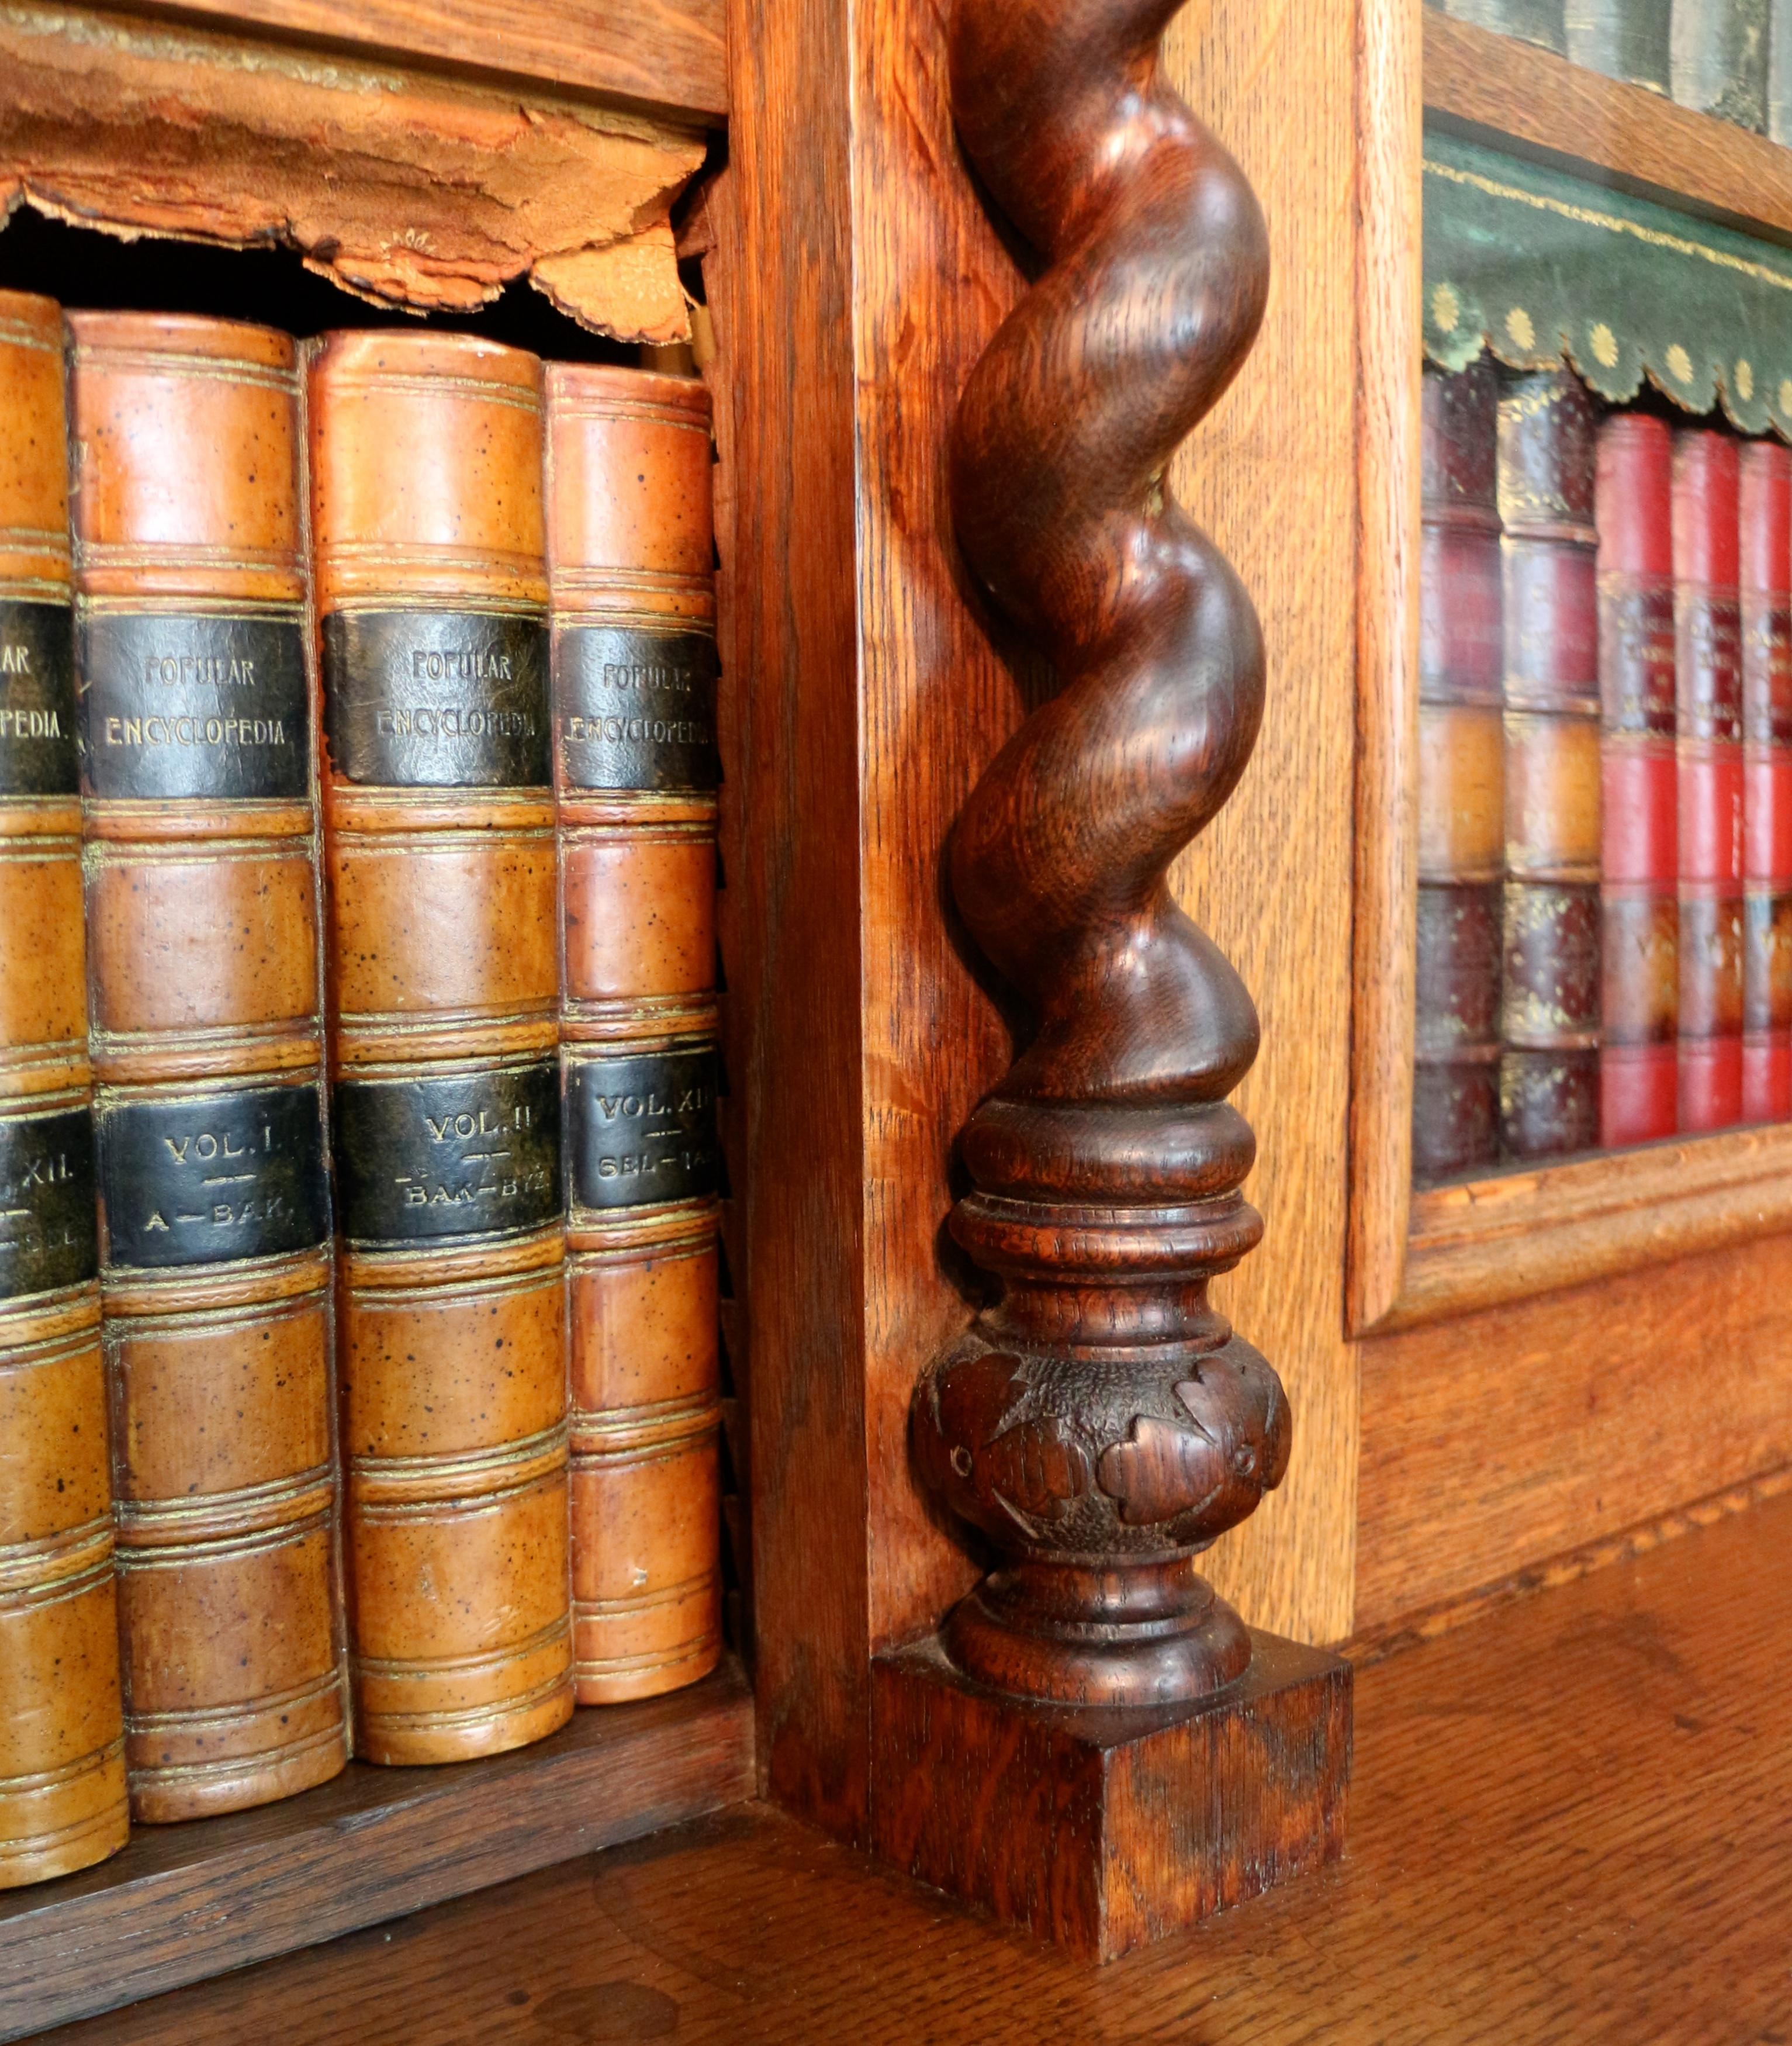 Antique Victorian Breakfront Oak Bookcase from Kellie Castle by Garnett & Sons 8